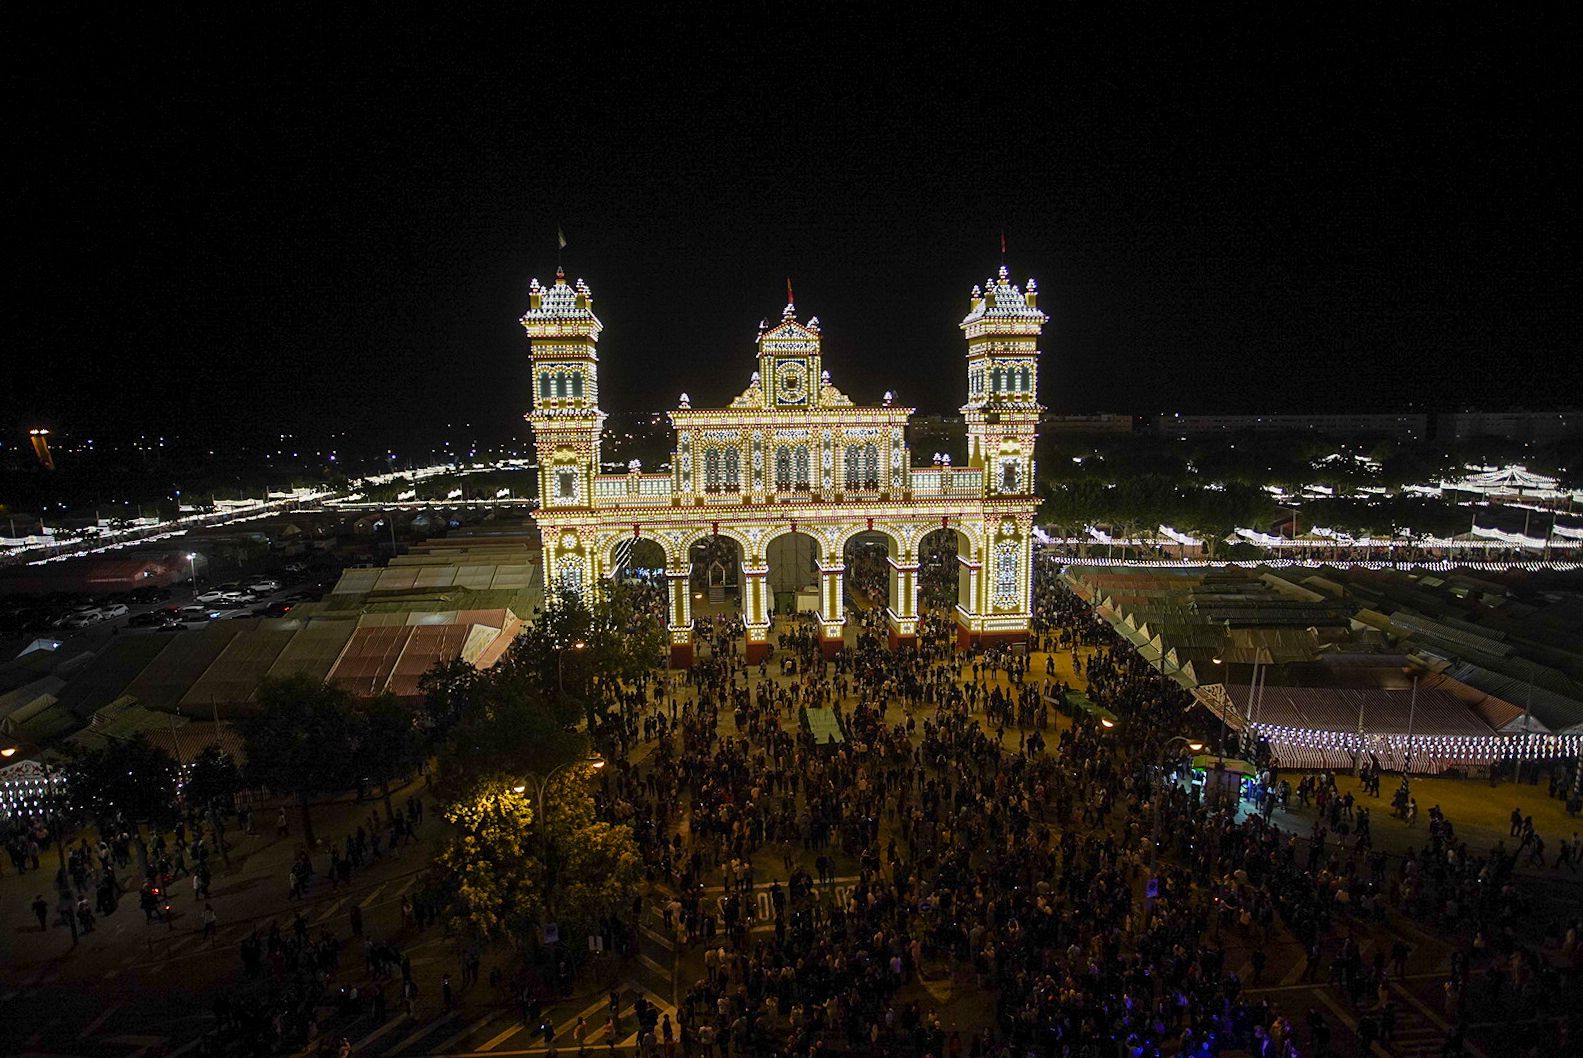 Imagen aérea de la Feria de Sevilla.